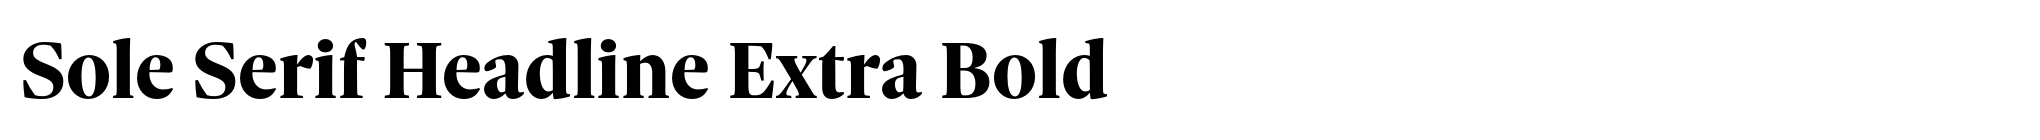 Sole Serif Headline Extra Bold image